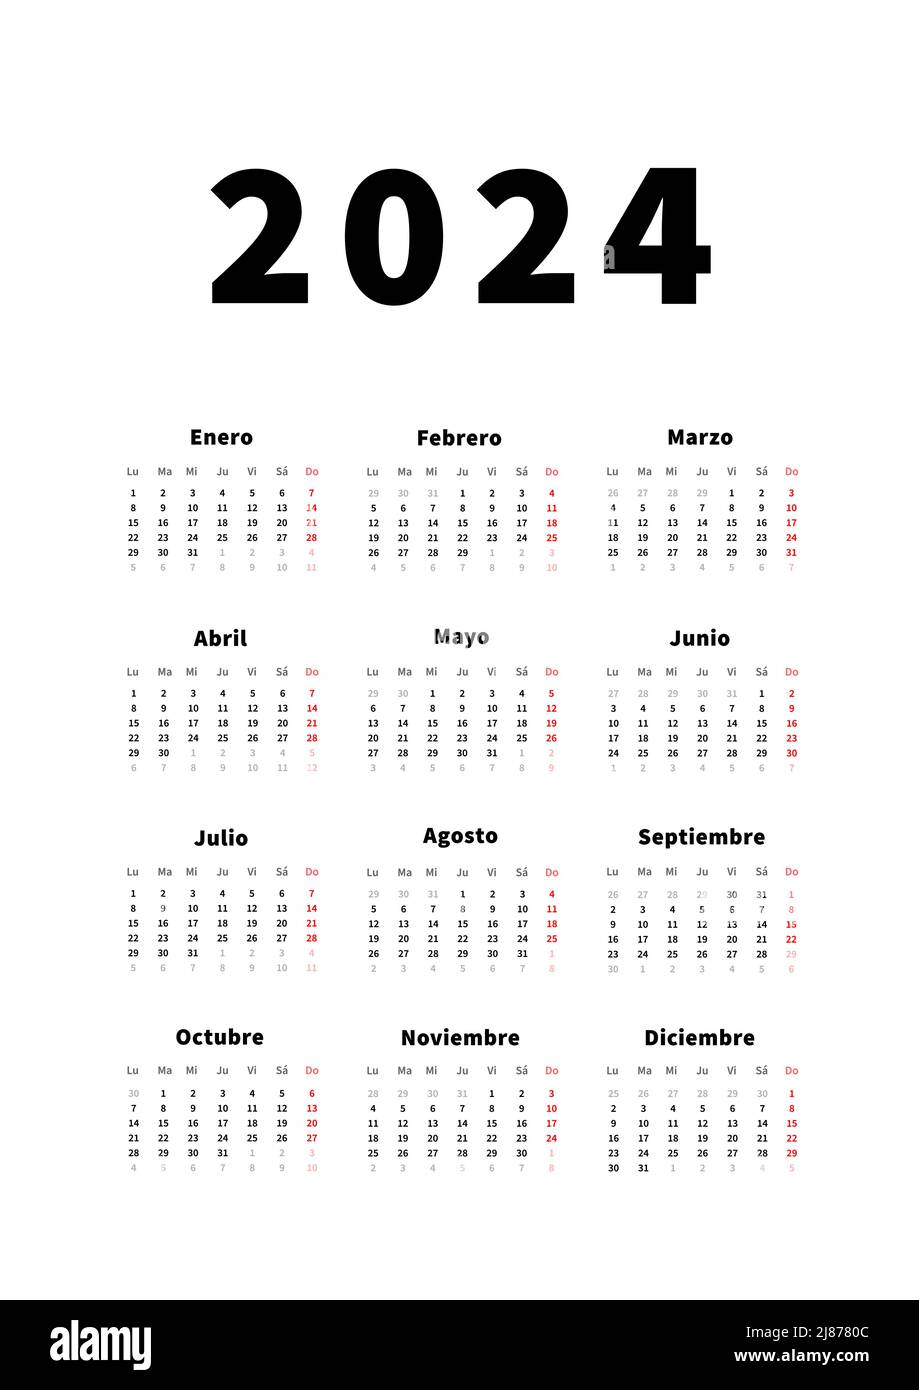 calendario vertical simple de 2024 años en español, calendario